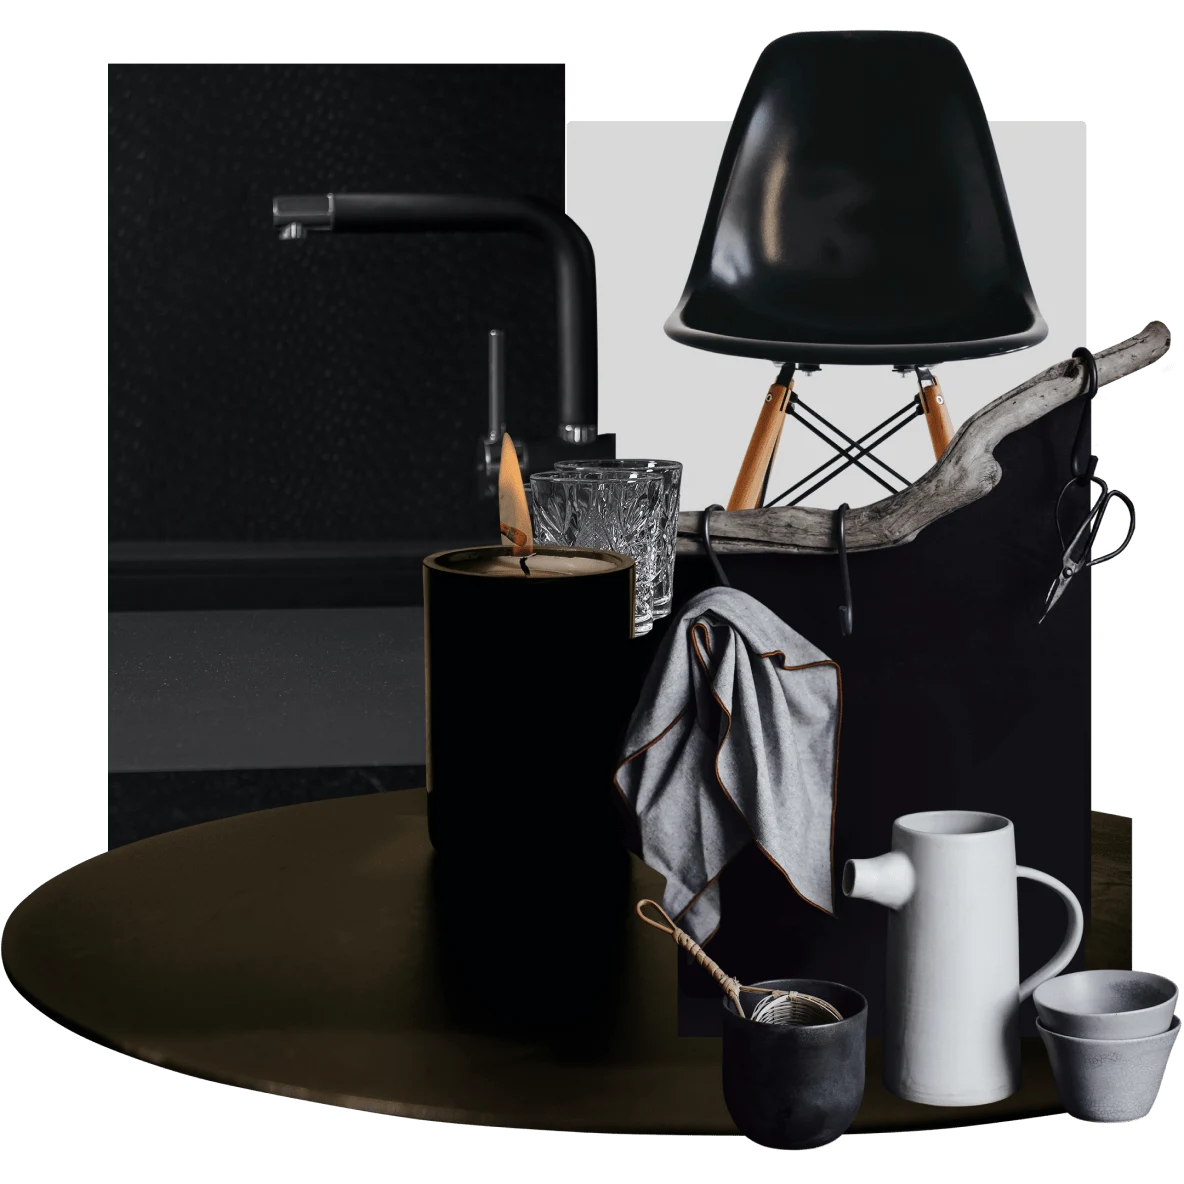 Velas negras y tazas grises y blancas en una mesa redonda negra. Silla de oficina negra y grifería negra.